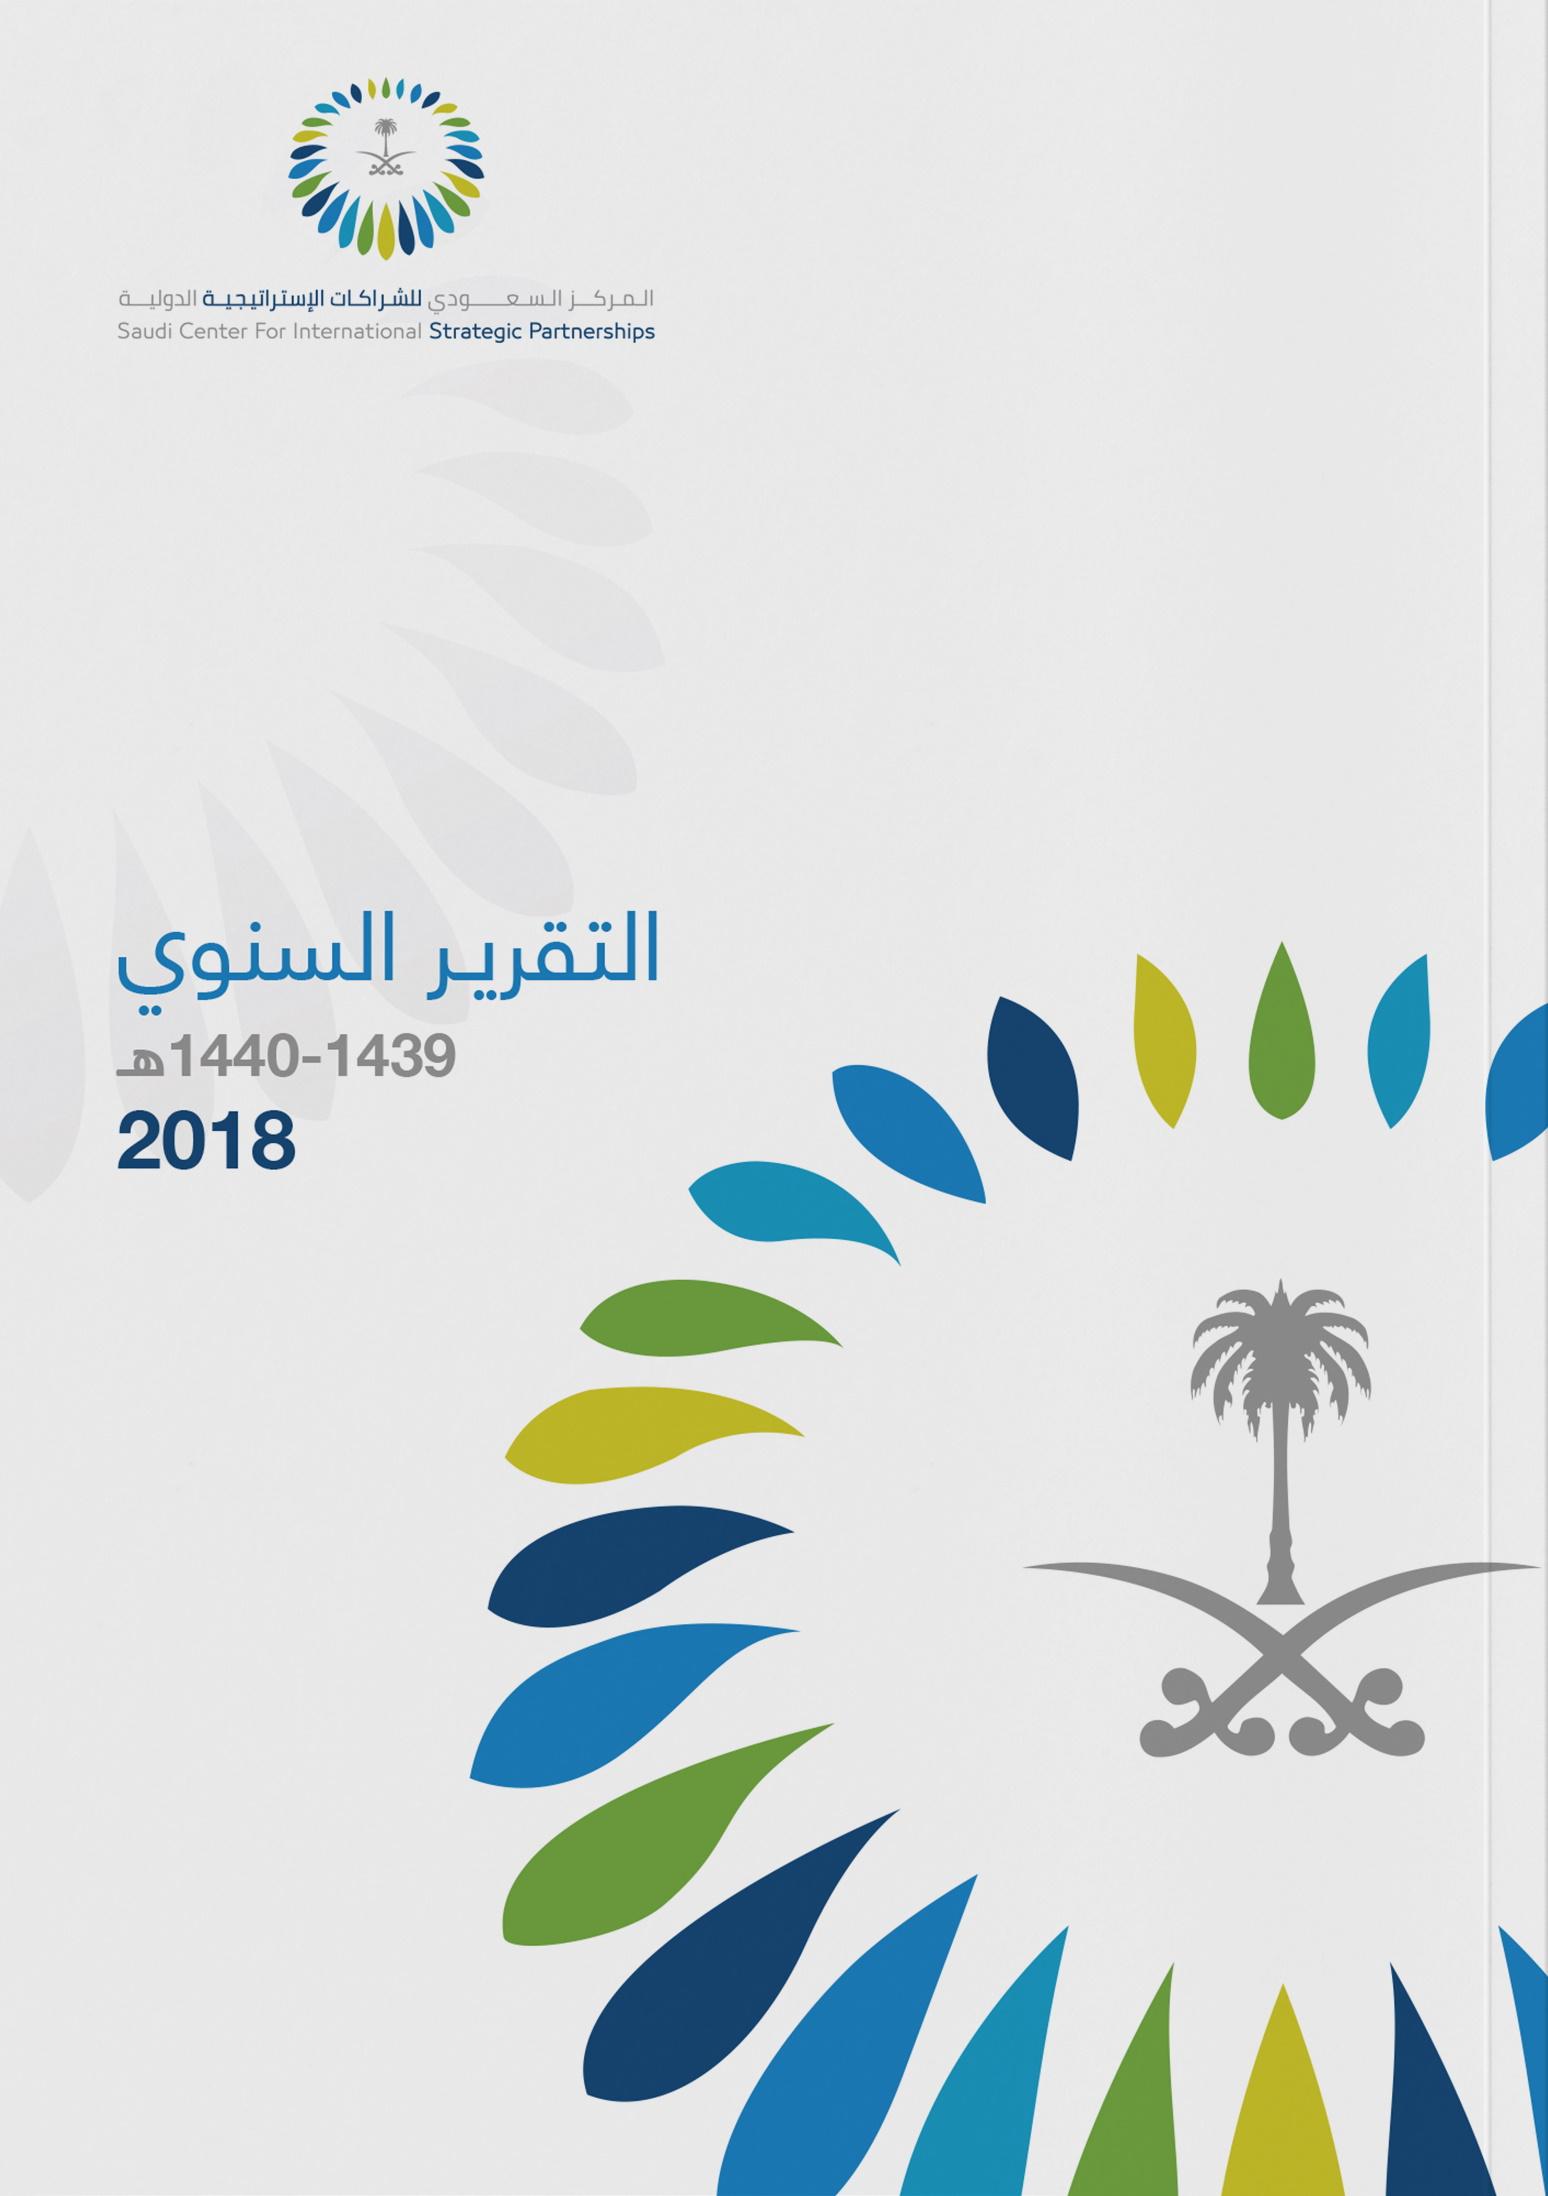 المركز السعودي للشراكات الاستراتيجية الدولية (2018)